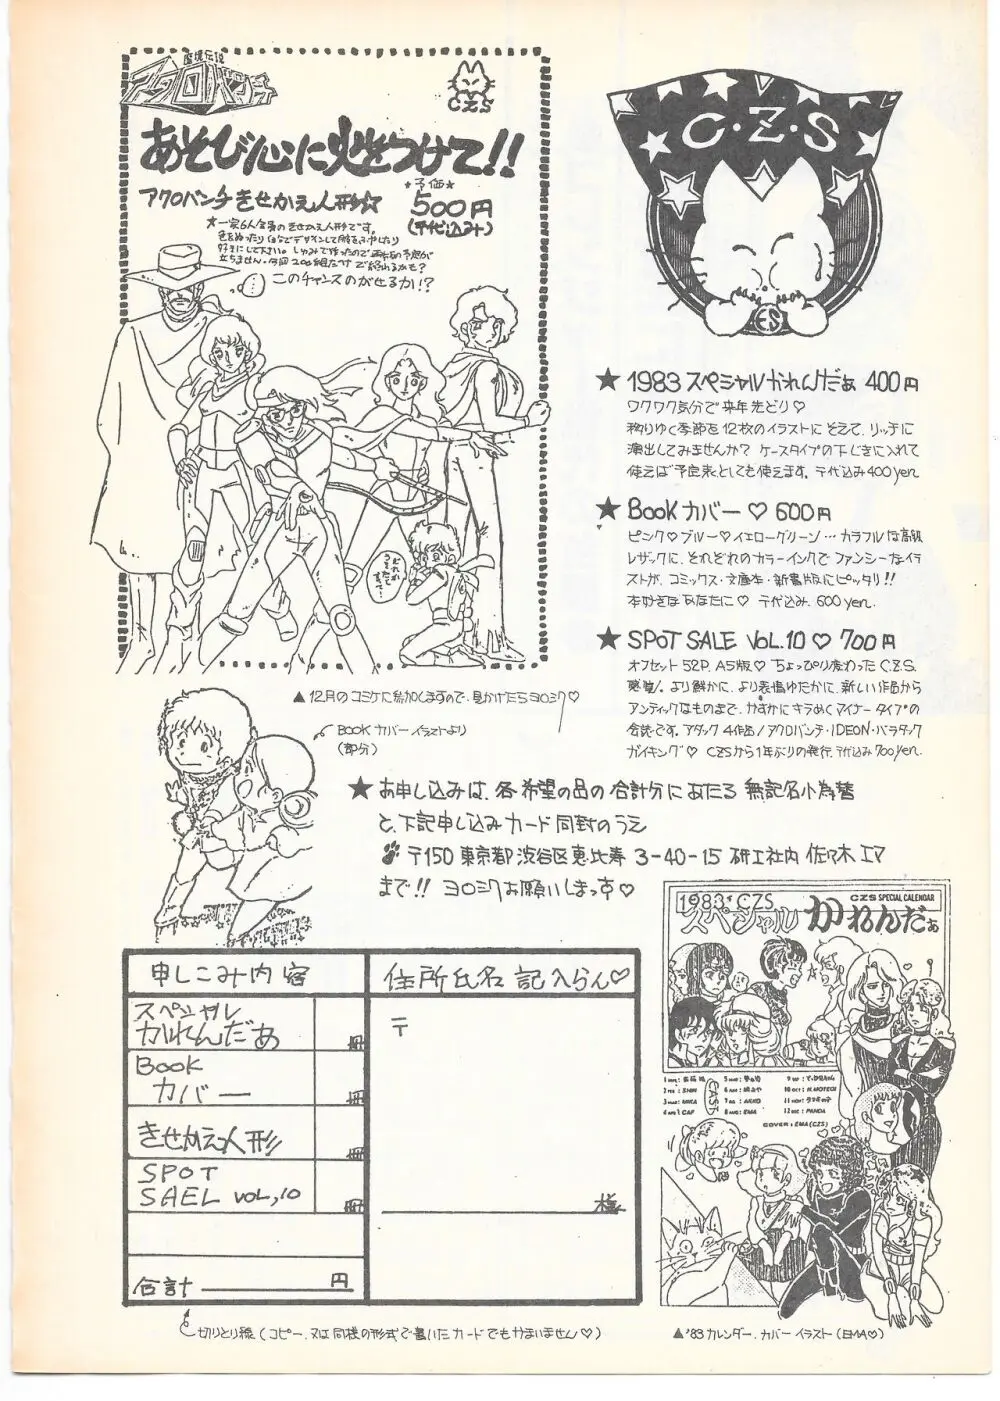 THE ANIMATOR 1 金田伊功特集号 135ページ